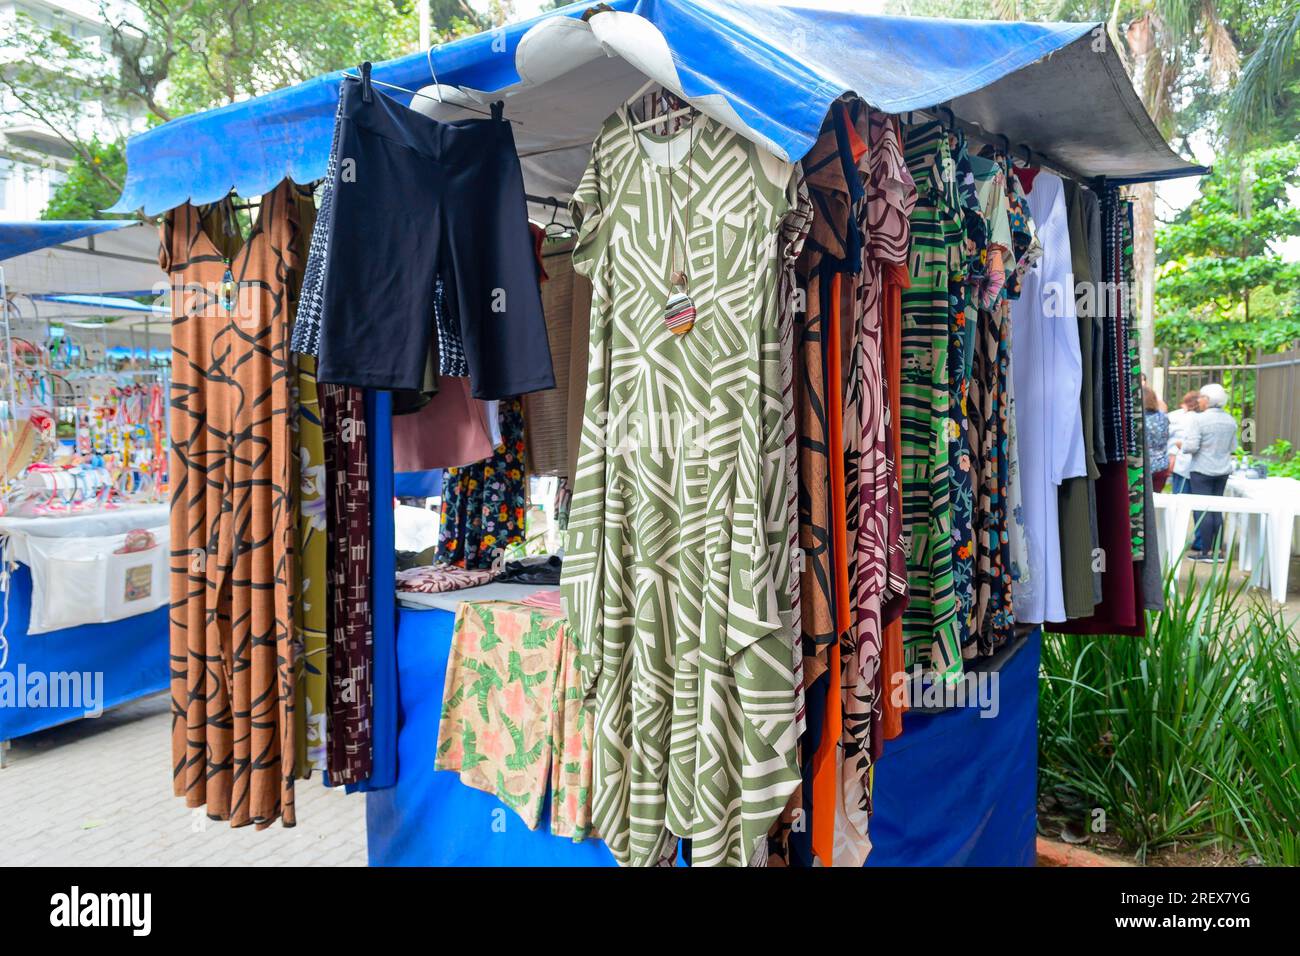 Niteroi, Brasilien, Eine abwechslungsreiche Kollektion von Damenbekleidung an einem Kiosk. Städtische Märkte sind eine Tradition in der Stadt. Stockfoto